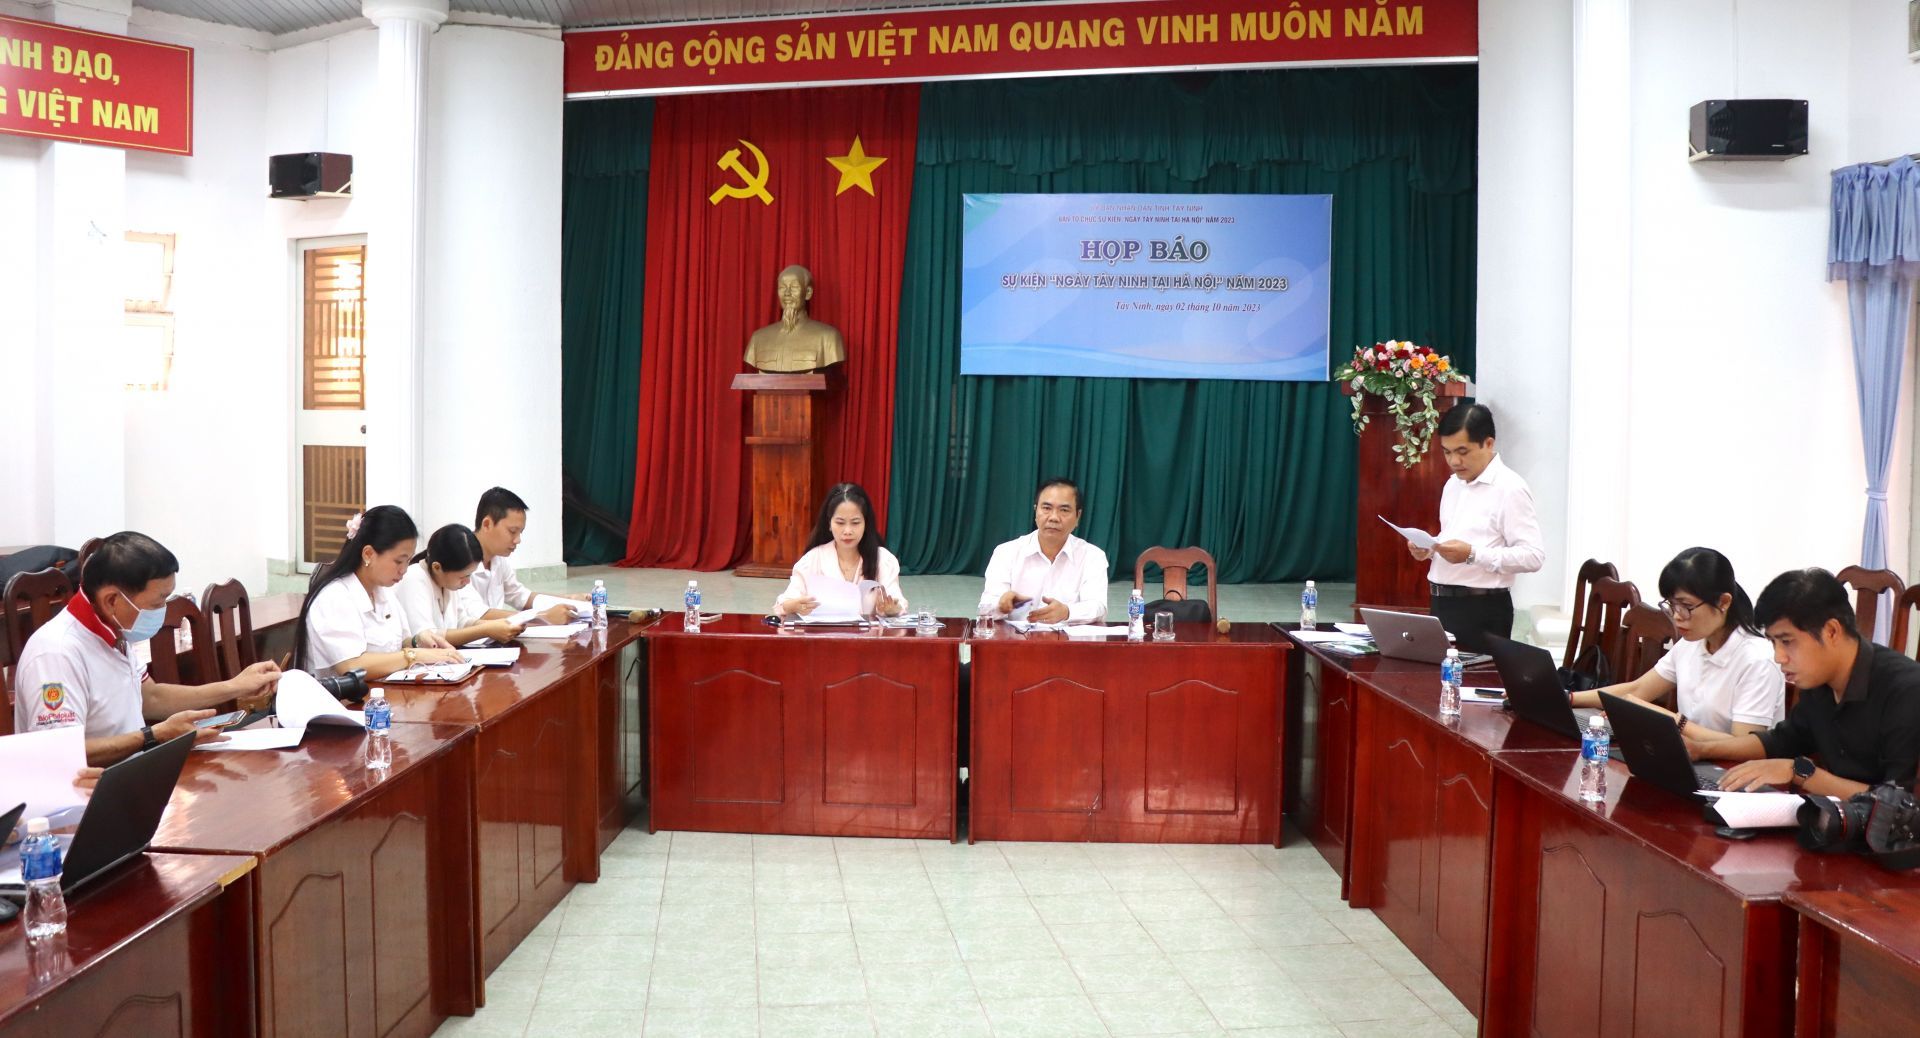 Tây Ninh: Họp báo sự kiện “Ngày Tây Ninh tại Hà Nội” năm 2023